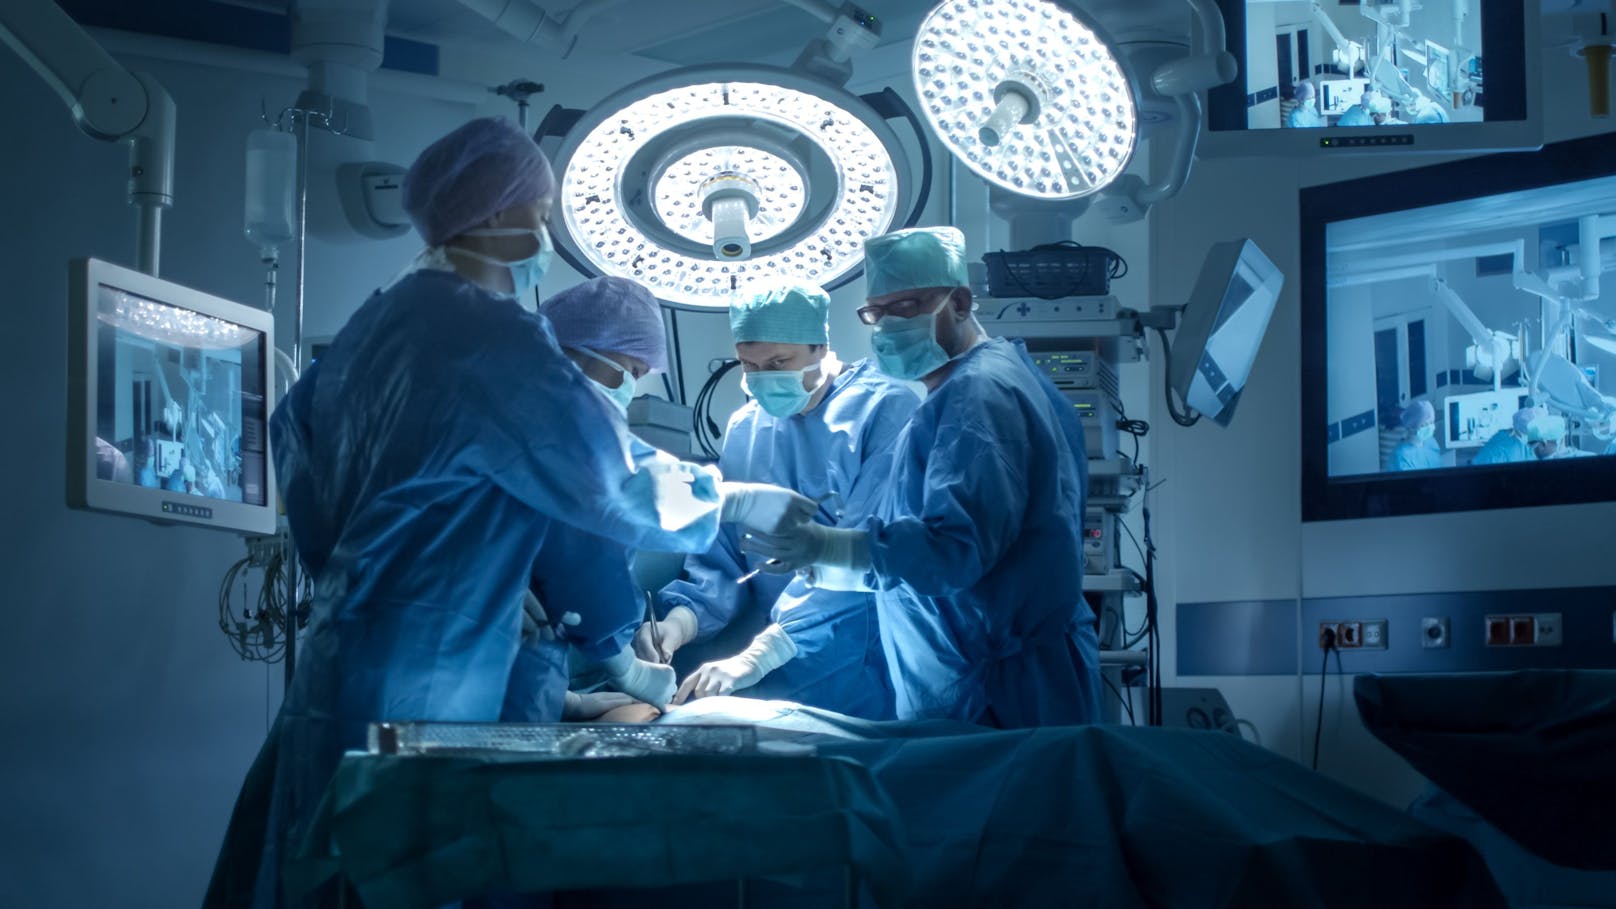 Chirurgische Eingriffe können durch das "Tumorverbrennen" häufig ersetzt werden.